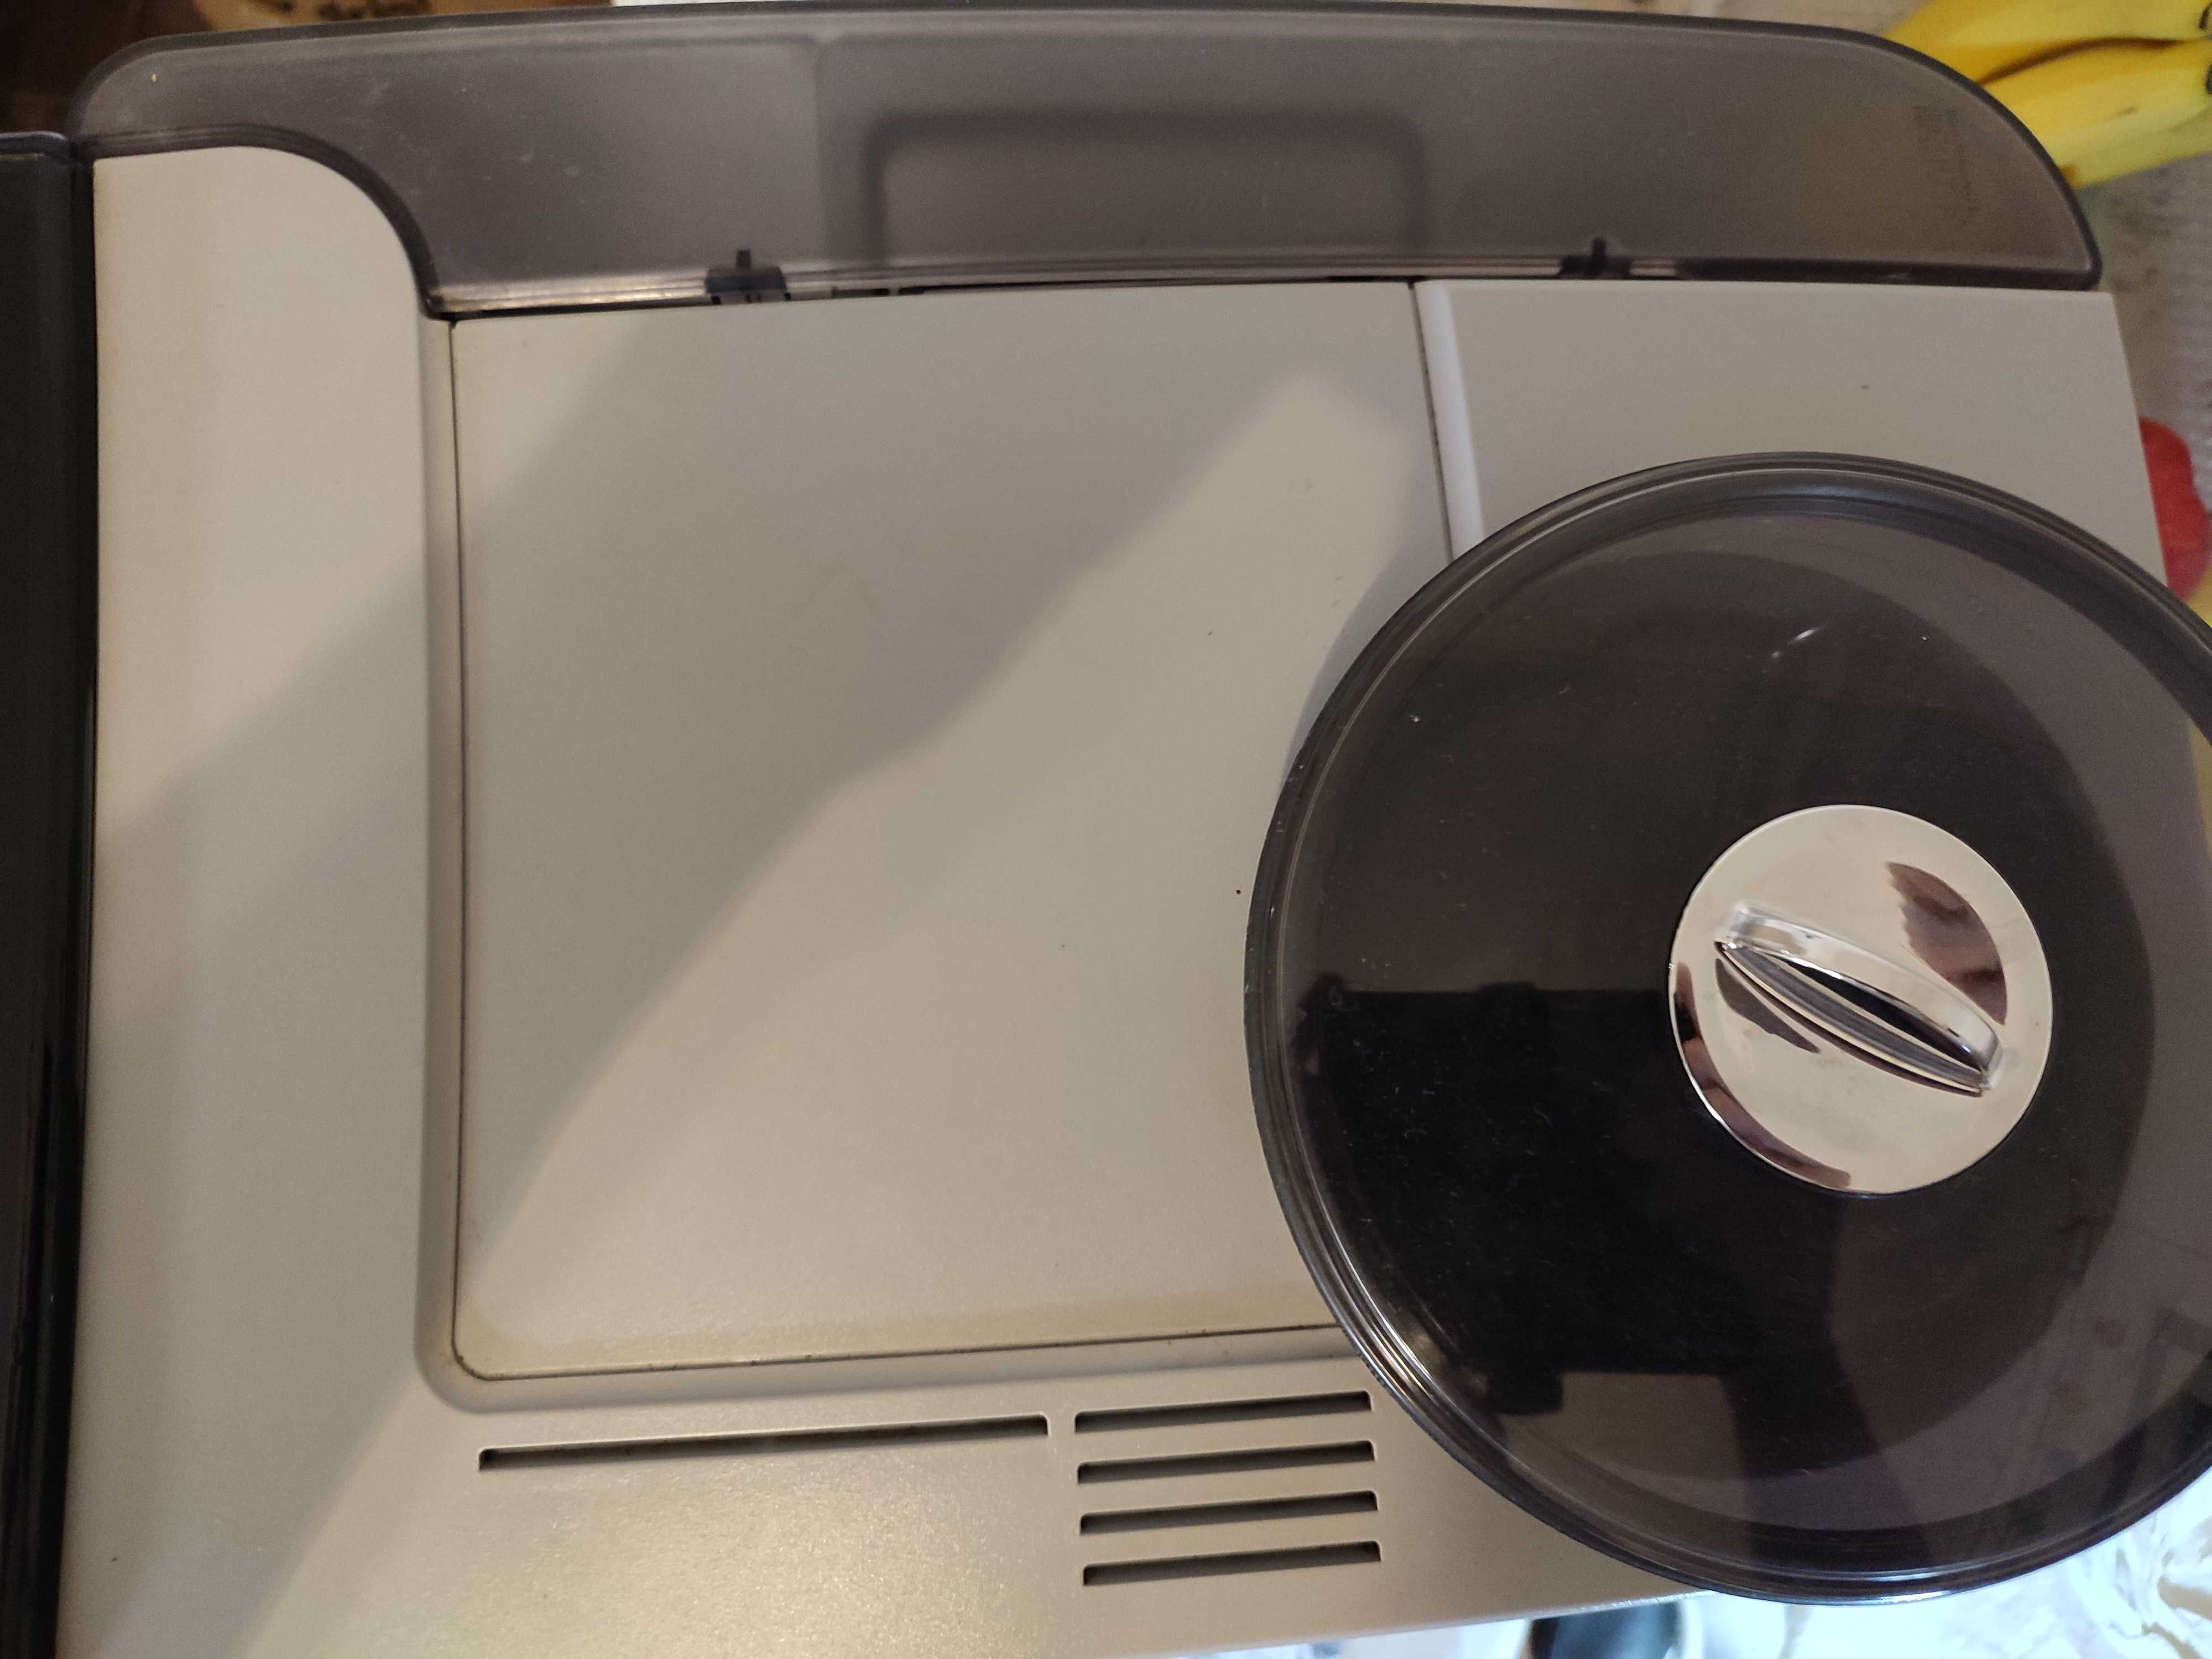 Bosch VeroAroma Exclusiv automatyczny ekspres do kawy